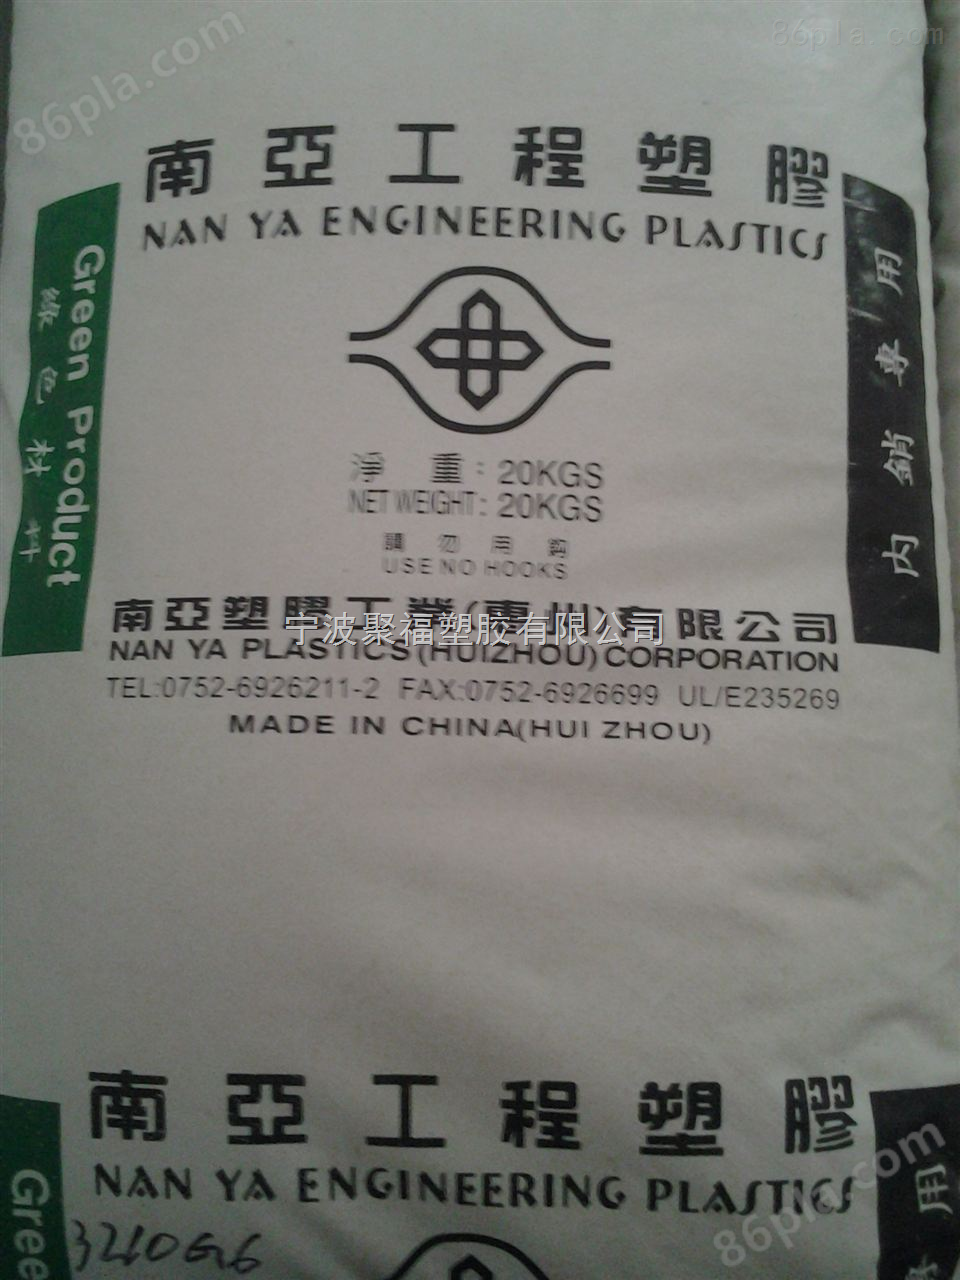 PP3307 现货供应中国台湾南亚全系列塑料 余姚苏州上海提货点